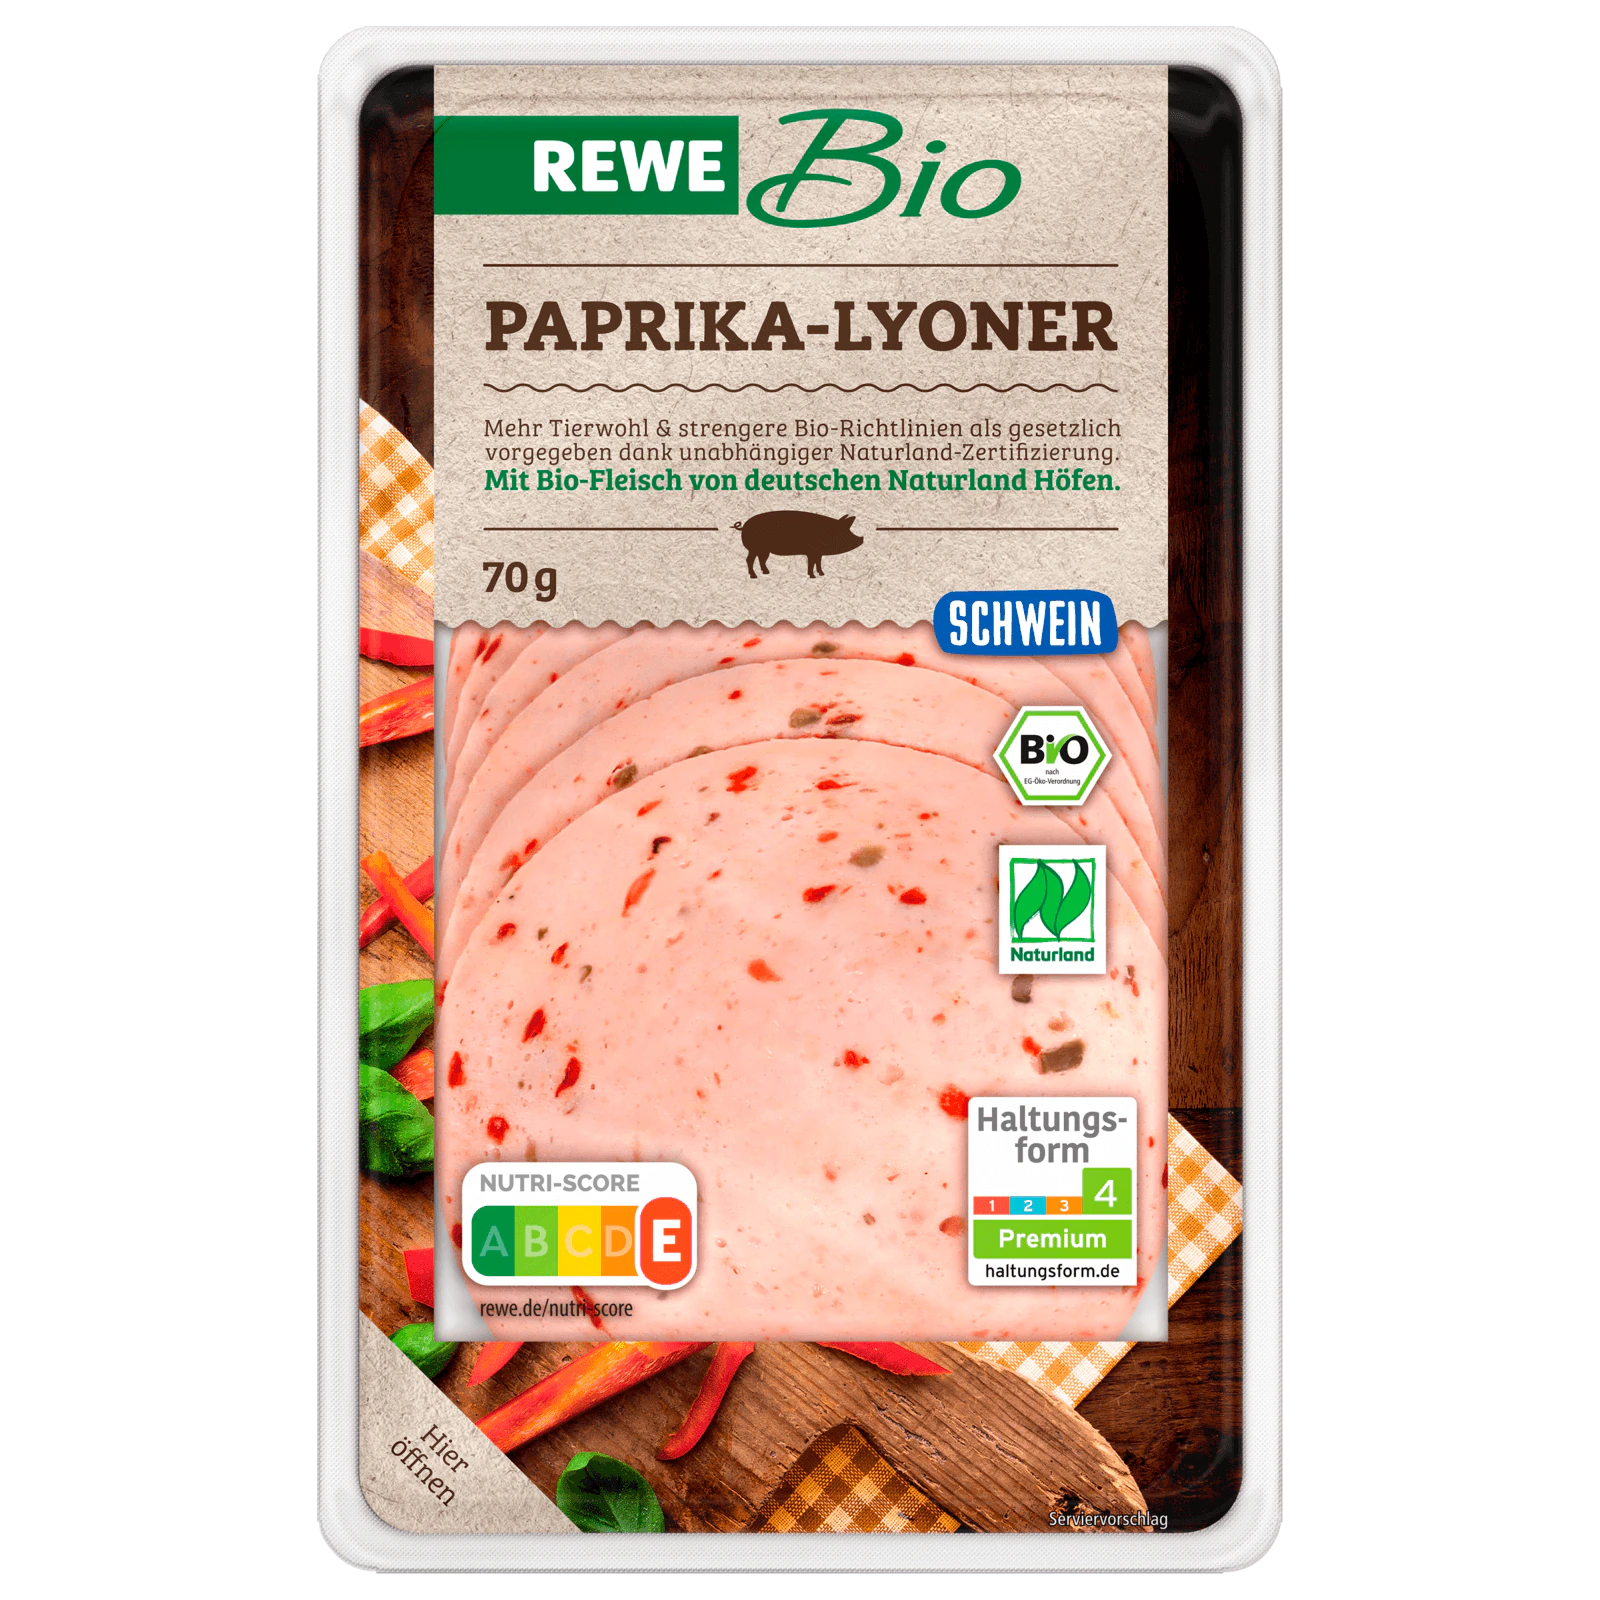 REWE Bio Paprika-Lyoner 70g  für 1.59 EUR